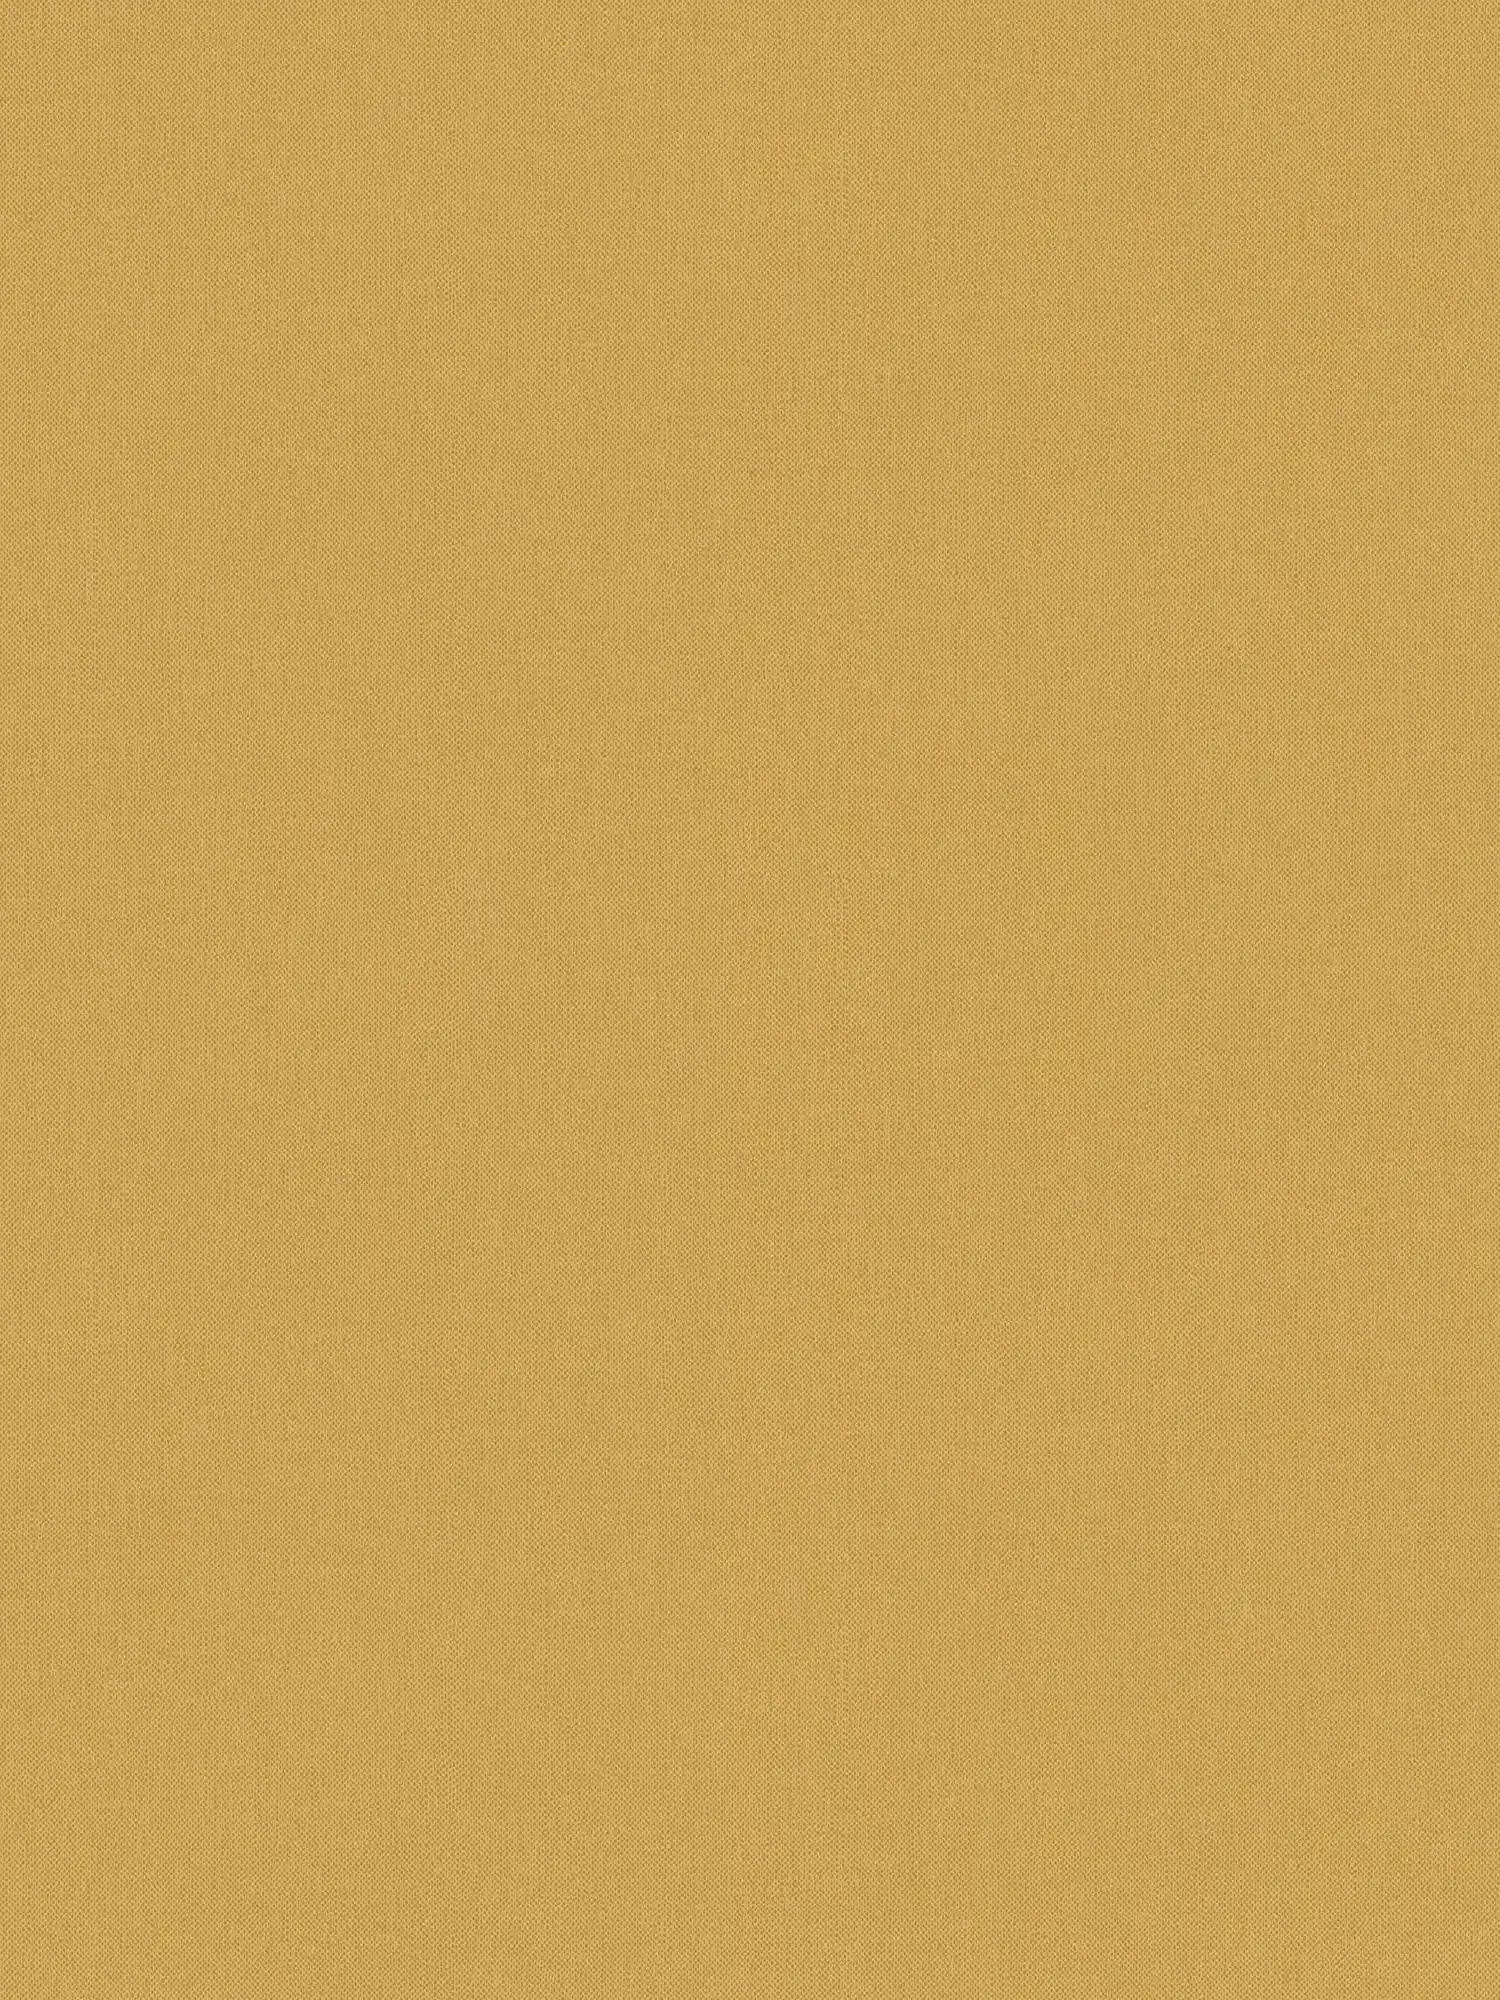 Carta da parati effetto lino giallo senape a tinta unita e opaca - giallo
